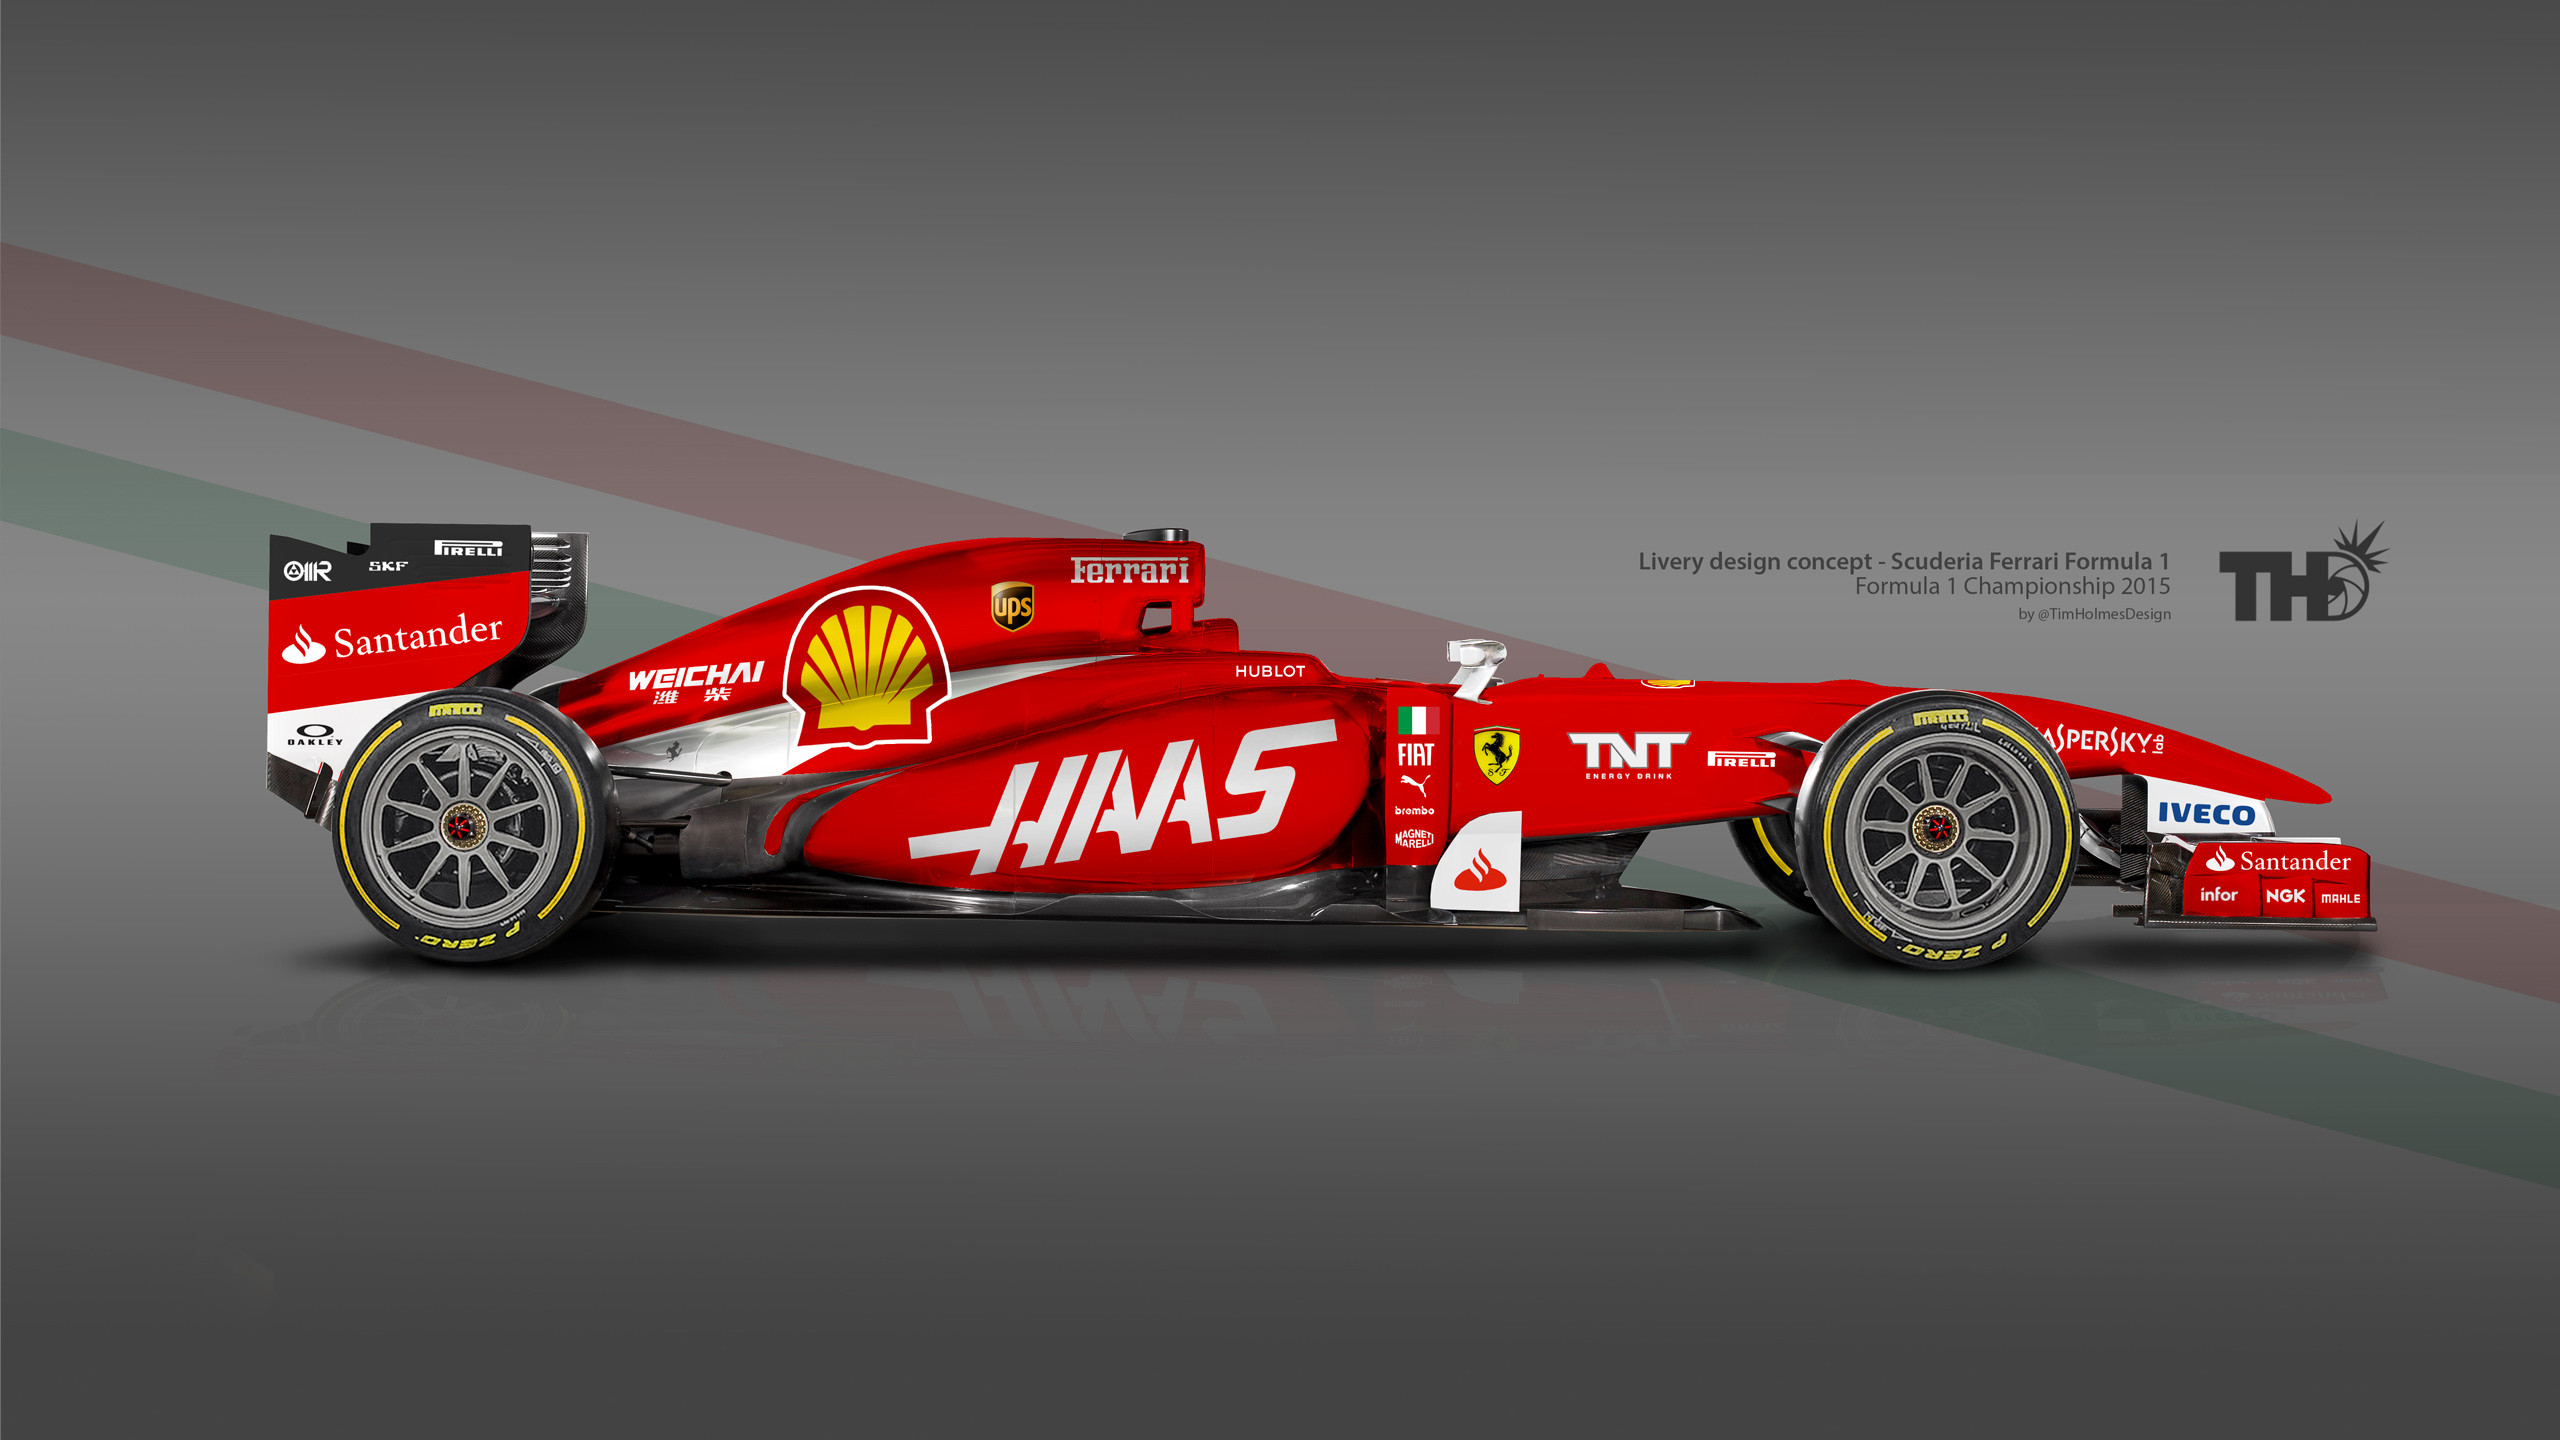 2560x1440 Ferrari Formula 1 2015